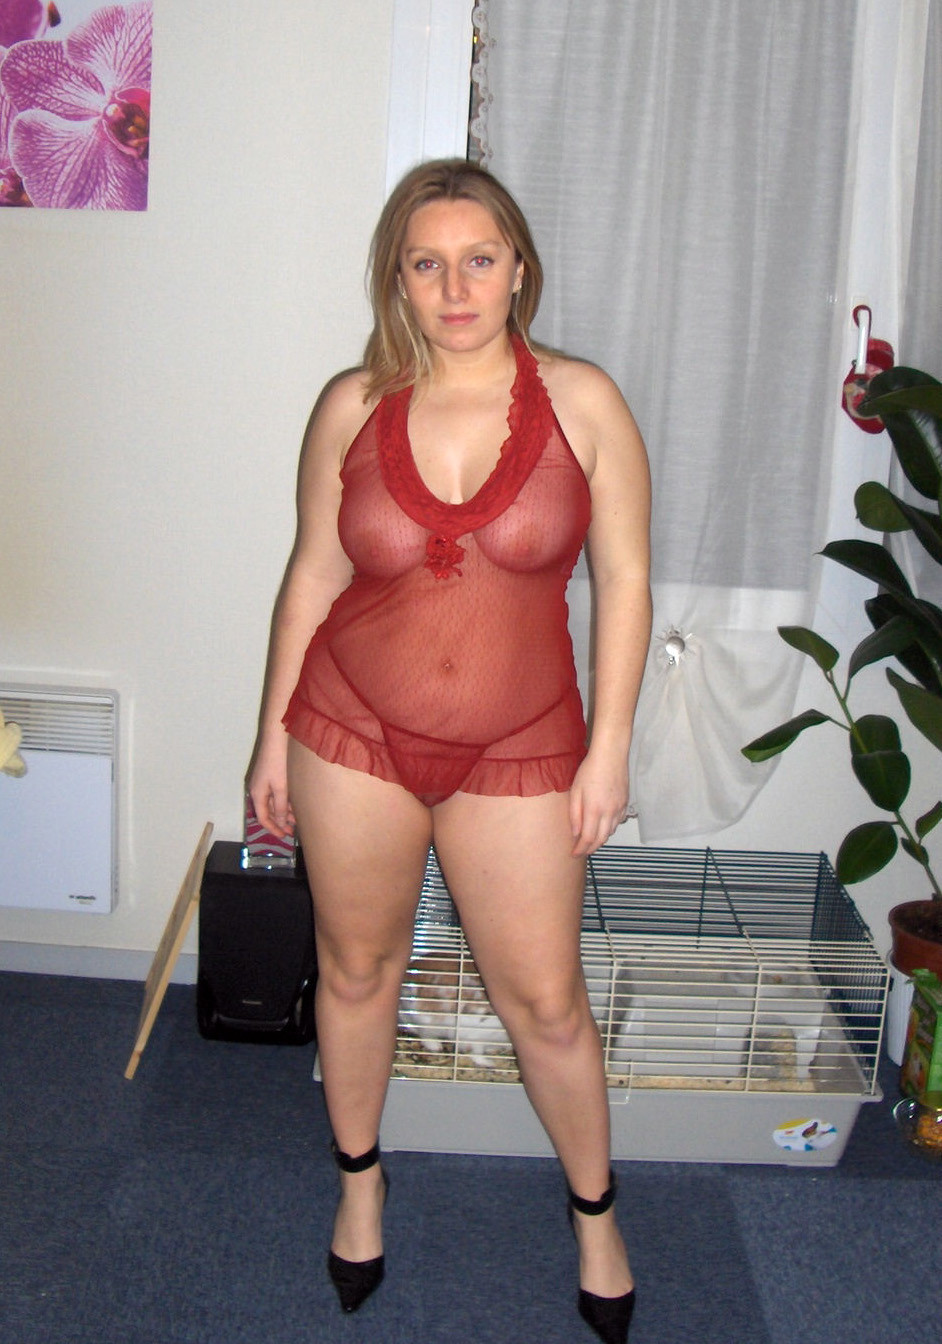 Curvy amateur lingerie wife